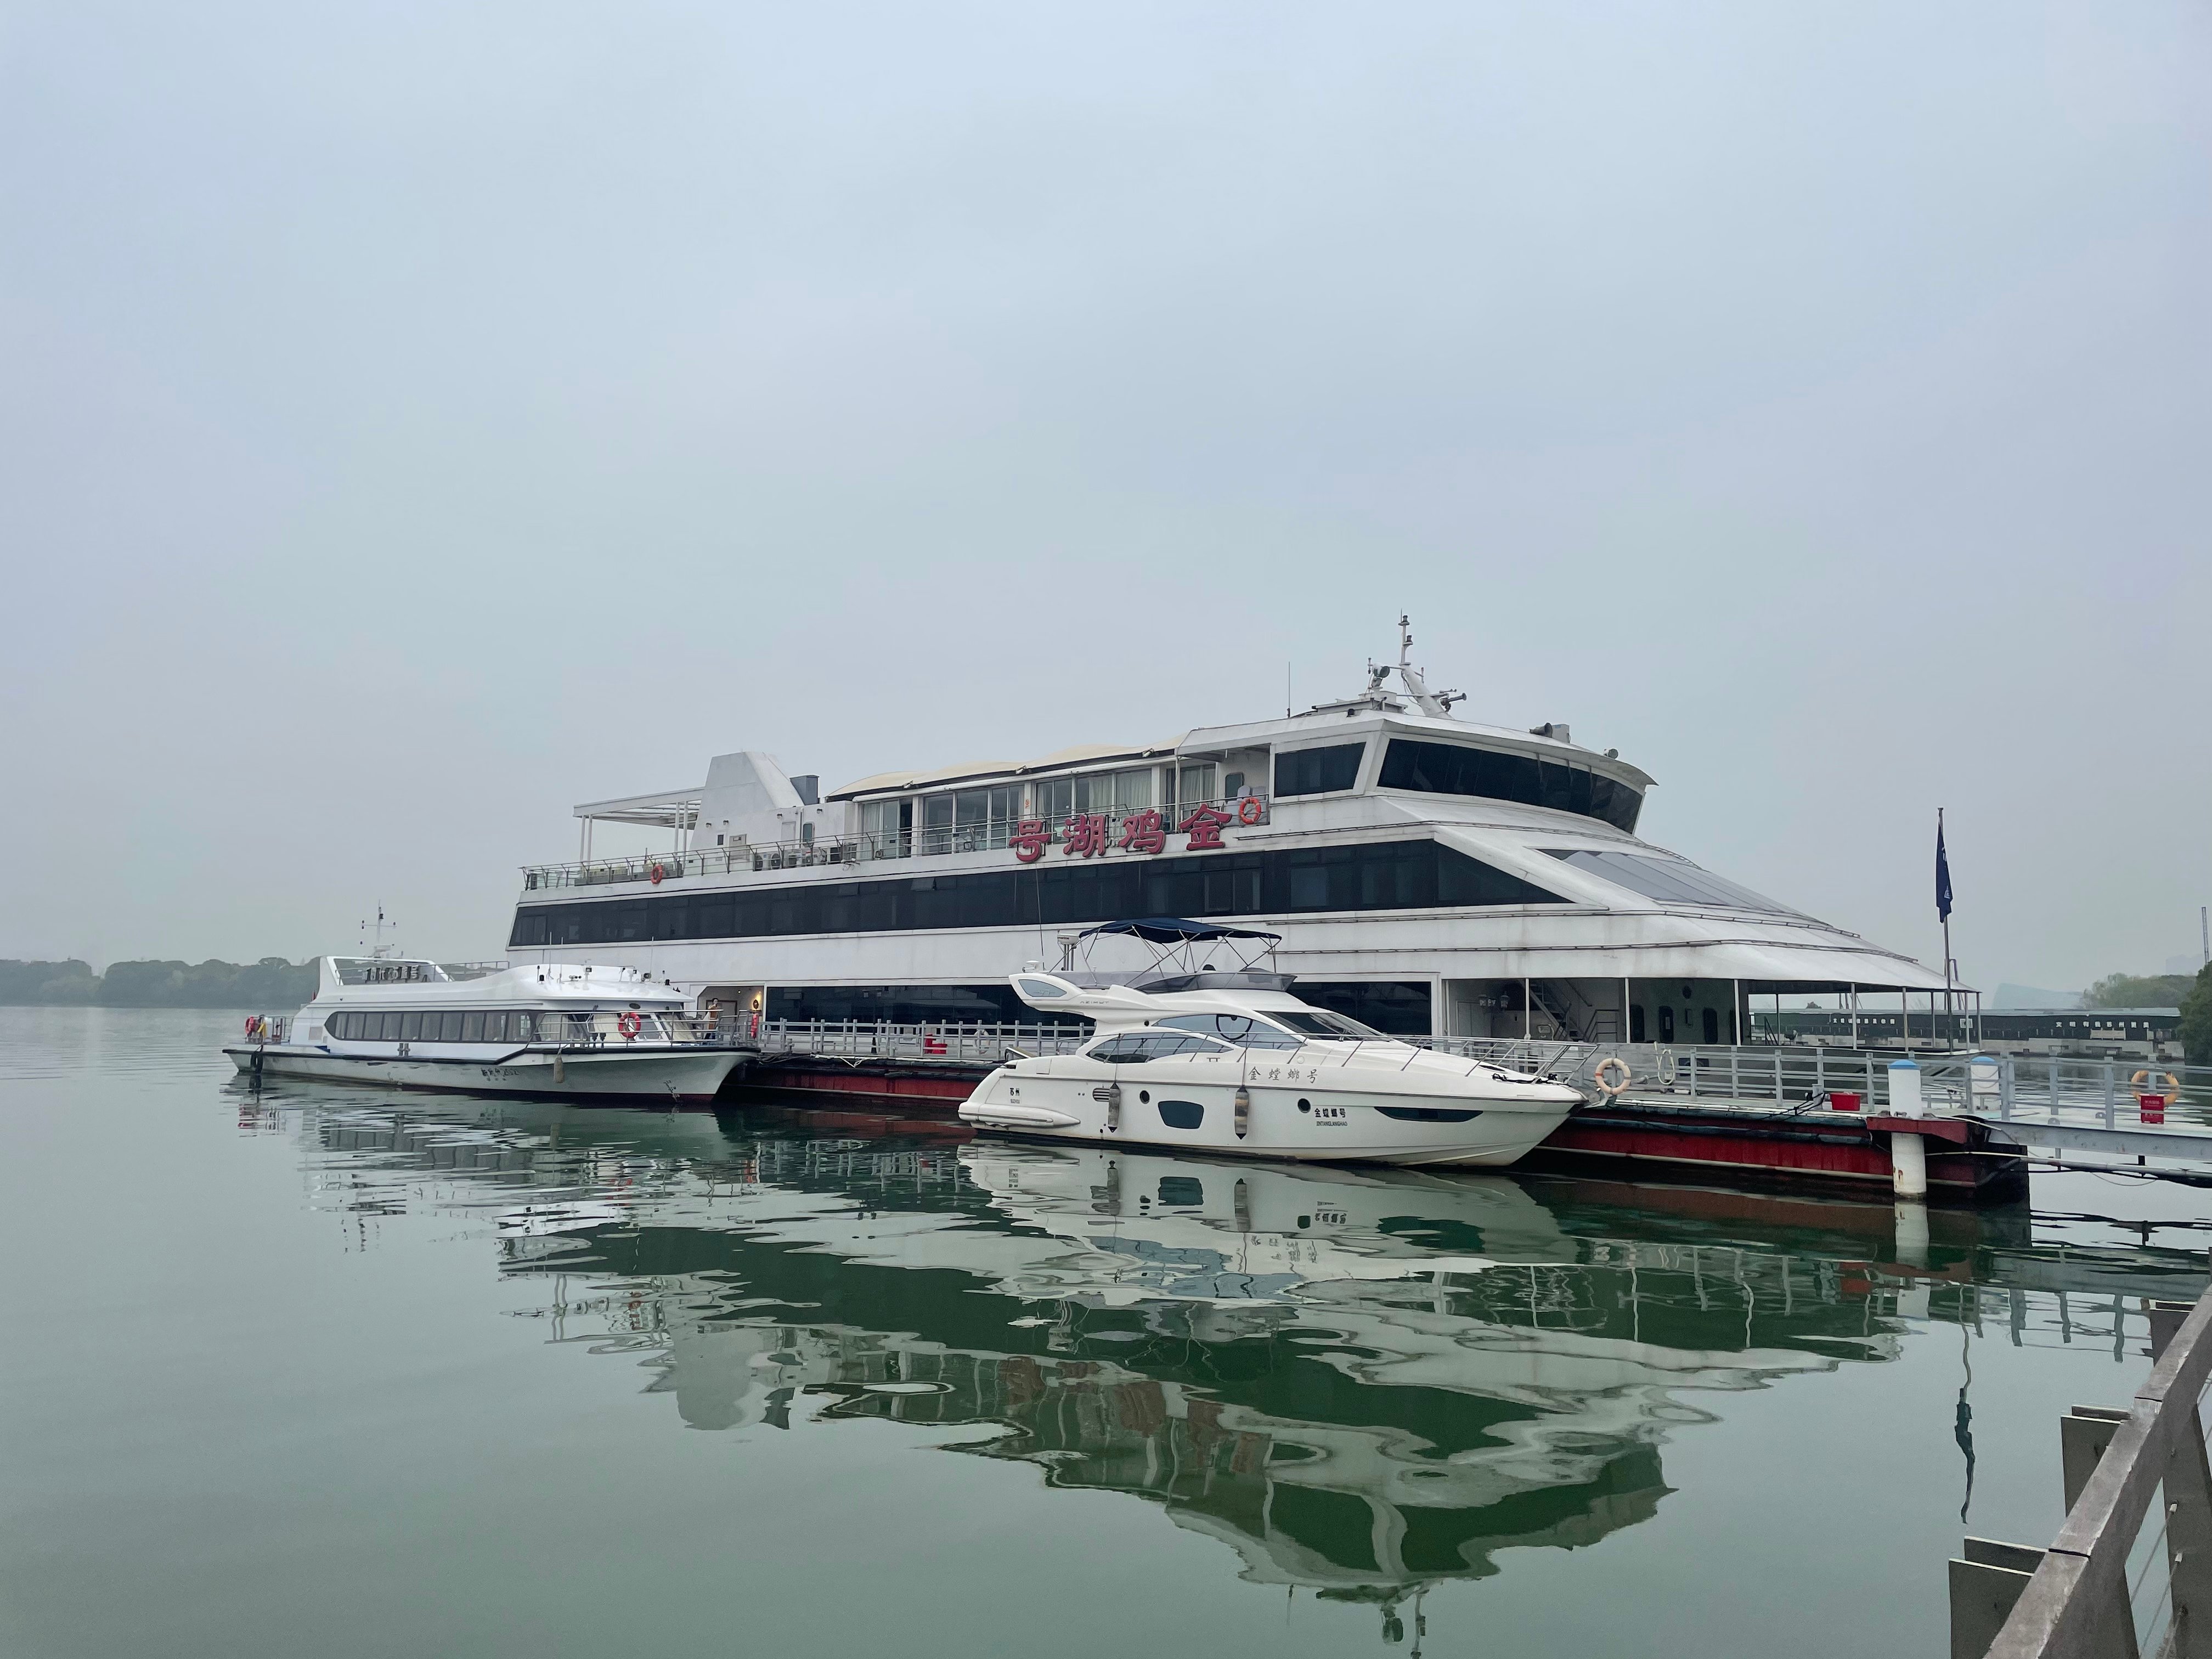 Jinji Lake Cruise, Suzhou